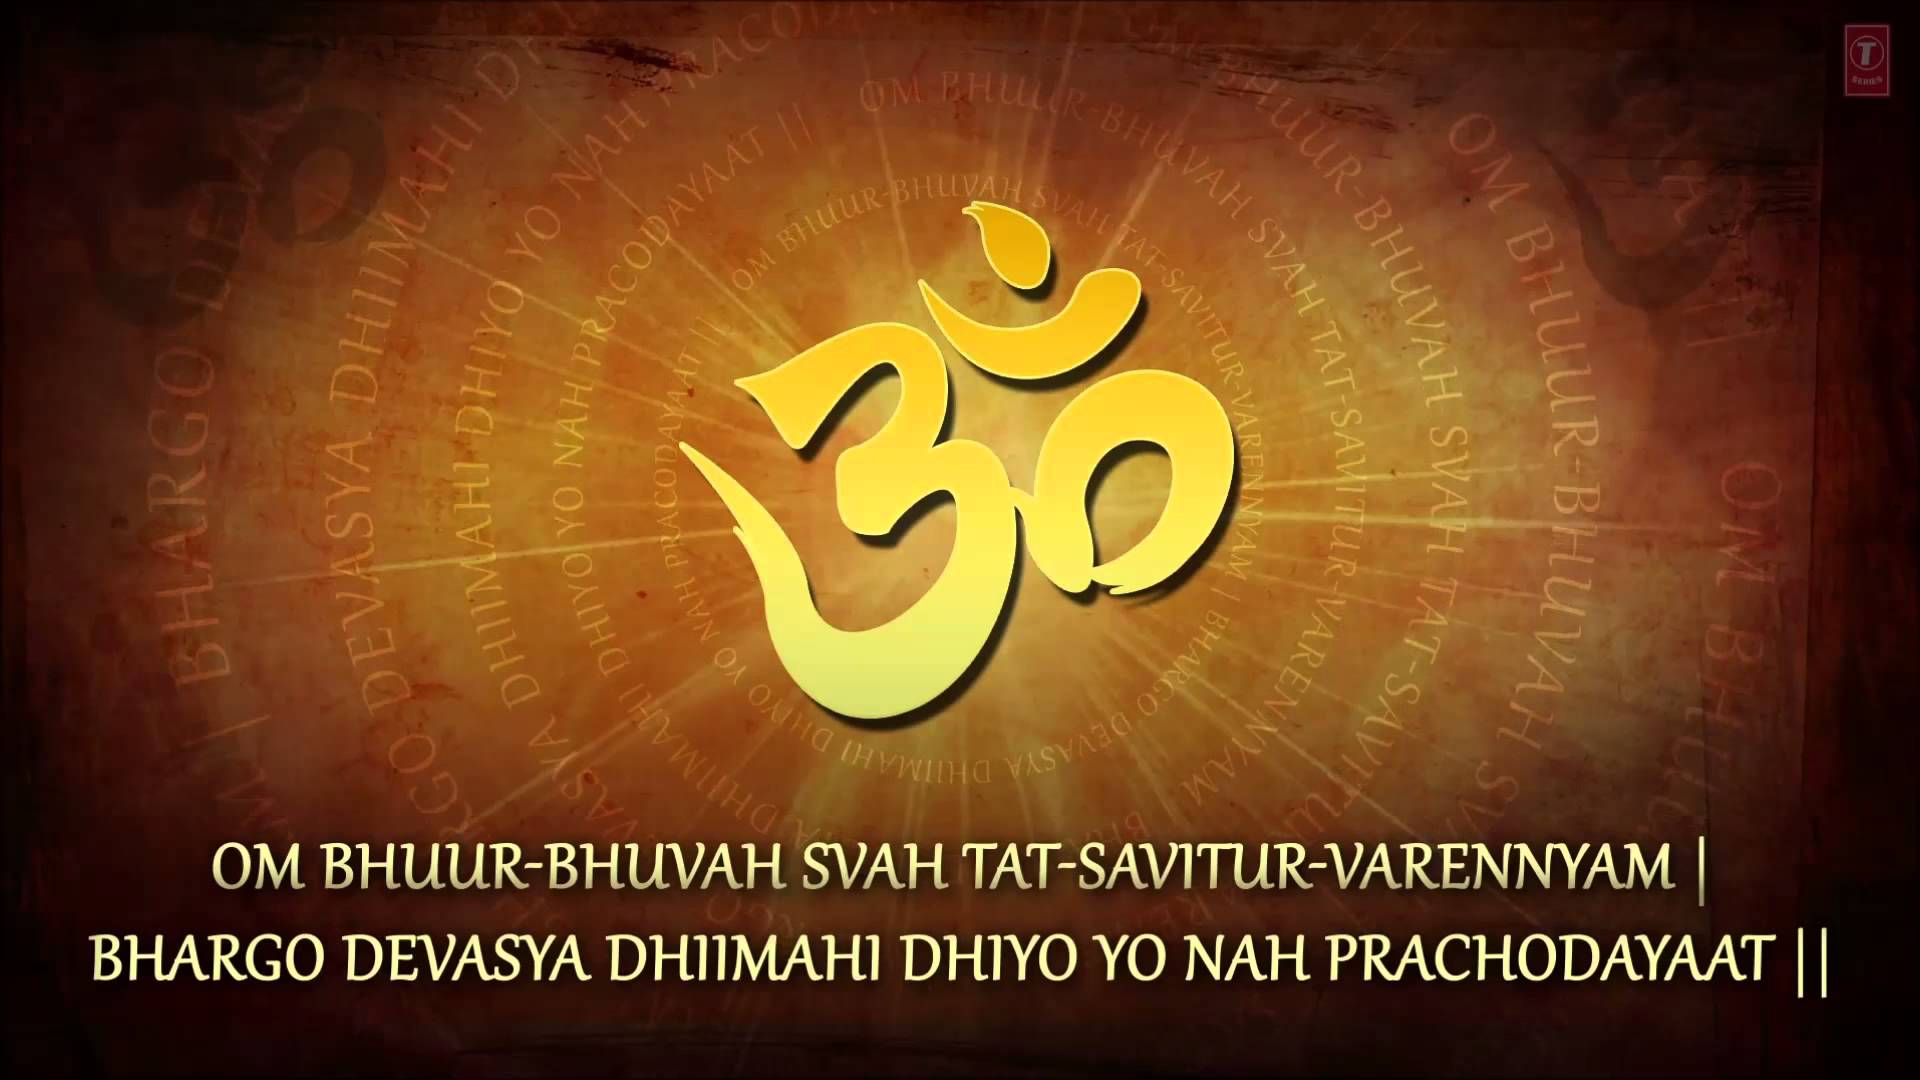 bharat darshan gayatri maha mantra